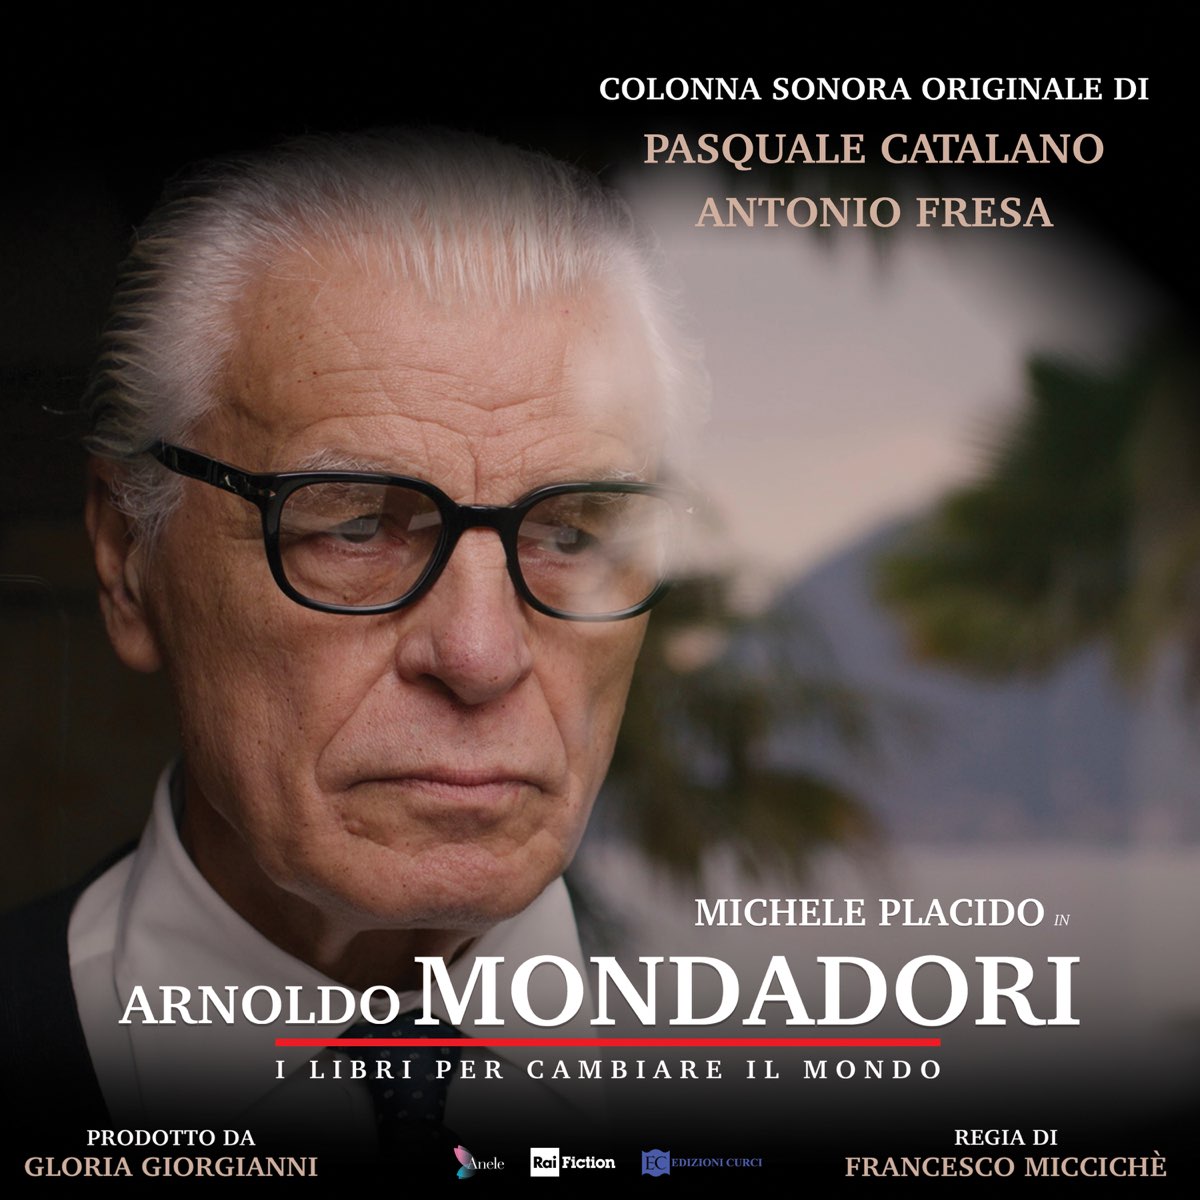 Arnoldo Mondadori - I libri per cambiare il mondo (Colonna Sonora  Originale) by Pasquale Catalano & Antonio Fresa on Apple Music